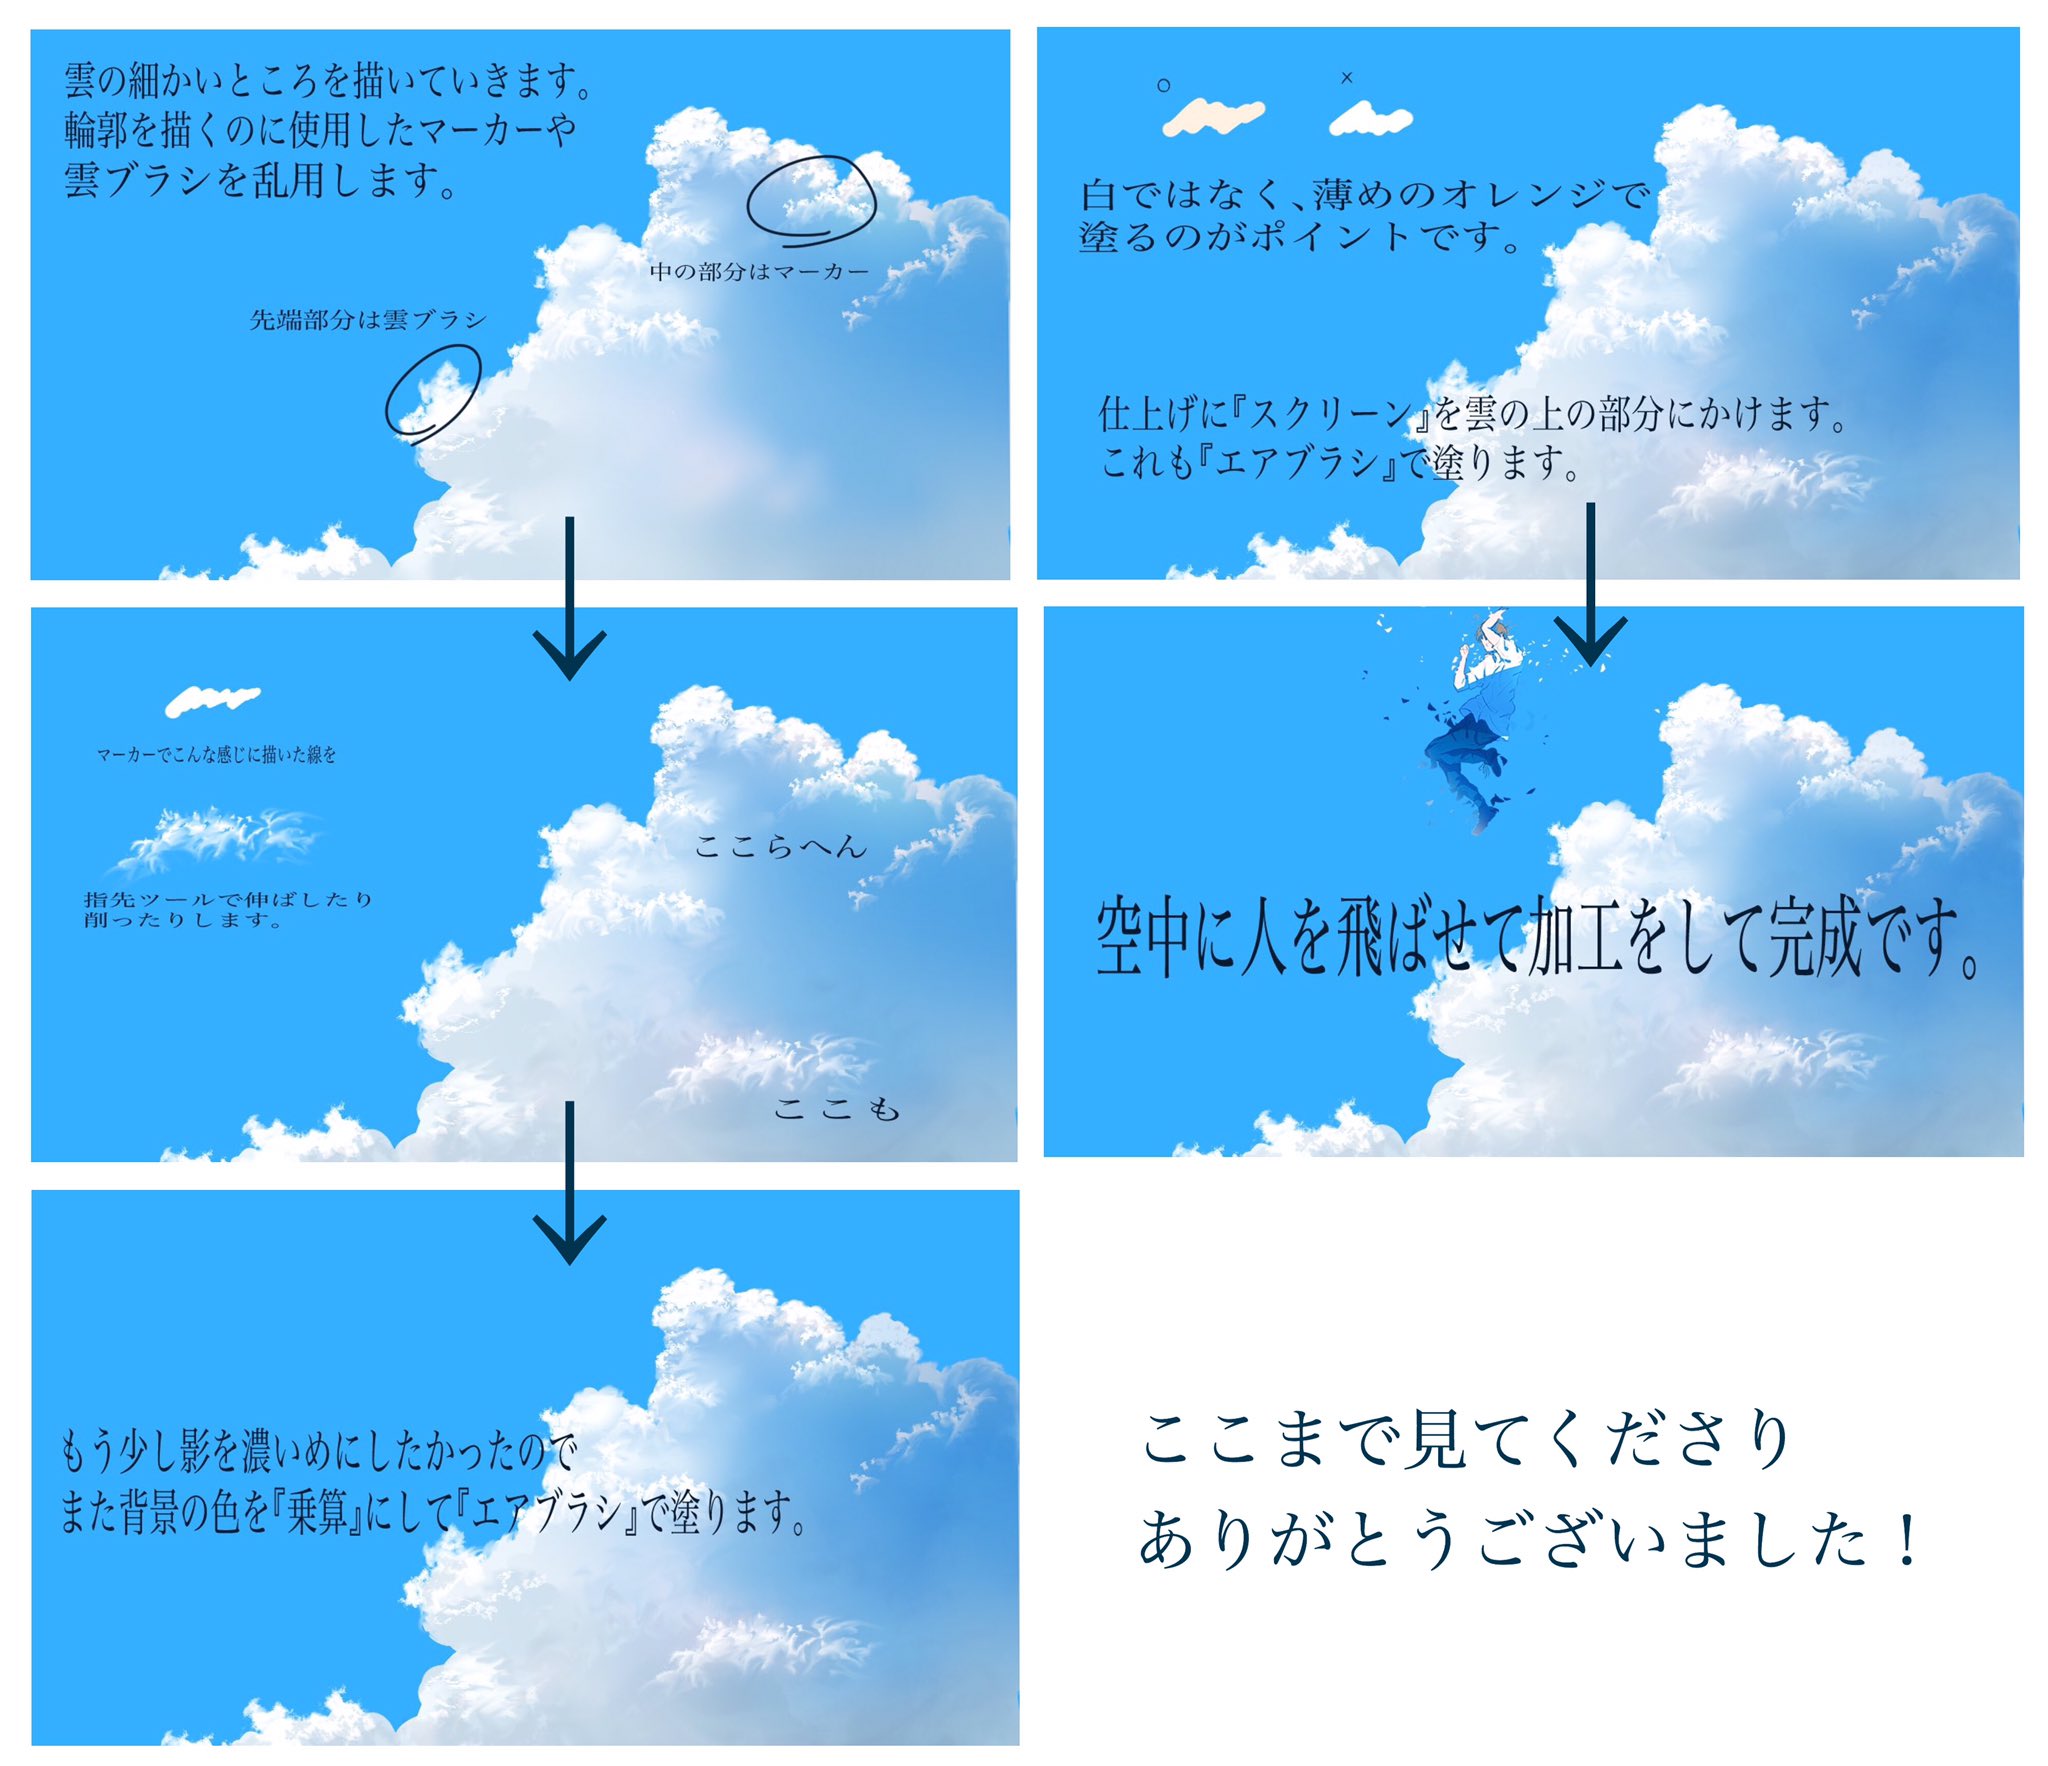 栞音 Mehanaリクエスト受け付け中 雲の描き方のメイキングになります ご参考までに T Co 6dighlv0md Twitter